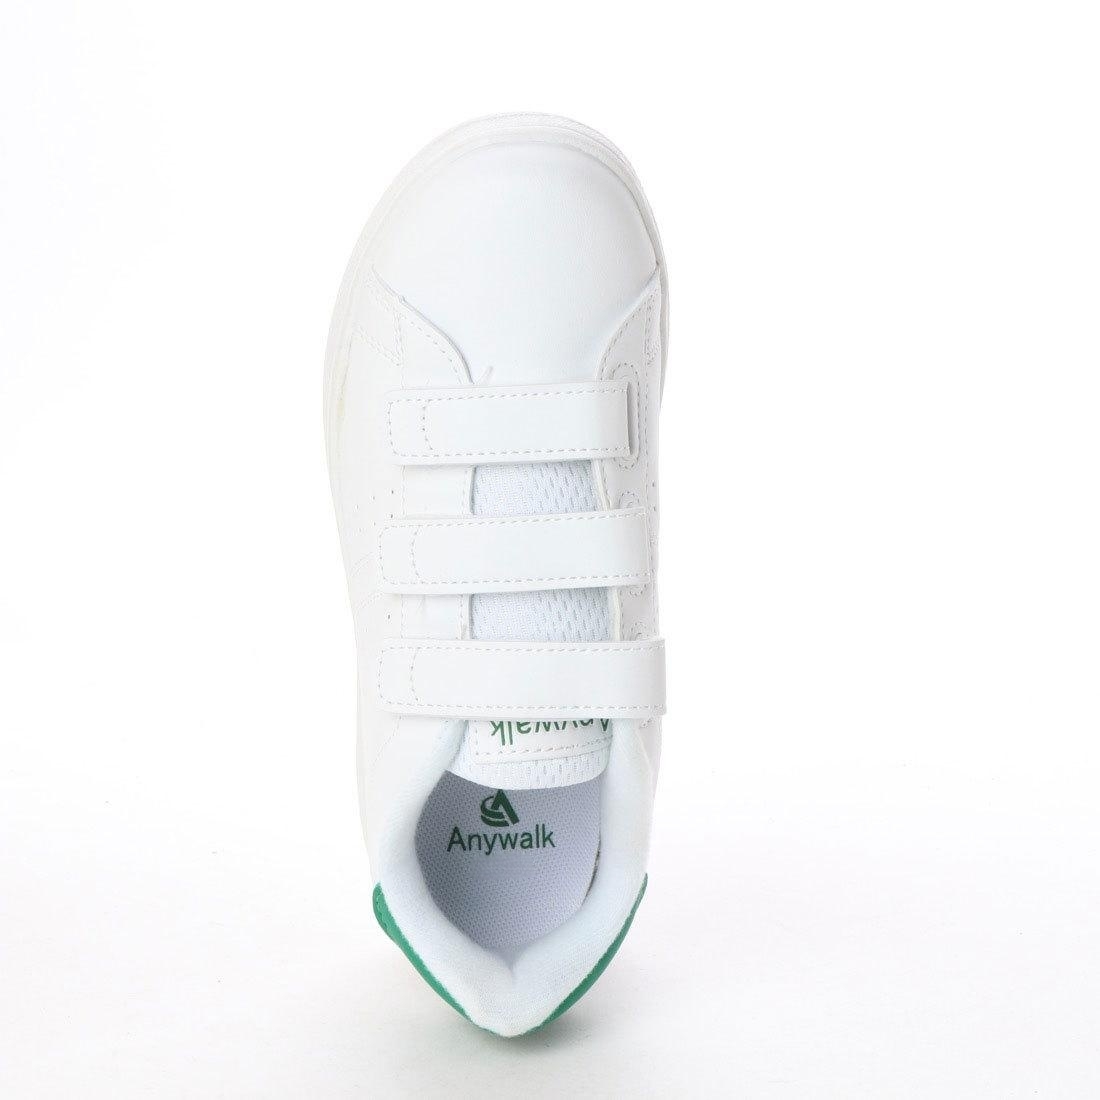  липучка обувь спортивные туфли cup стелька текстильная застёжка уличный белый зеленый белый зеленый 18559-wht-grn-245 ( 24.5cm )